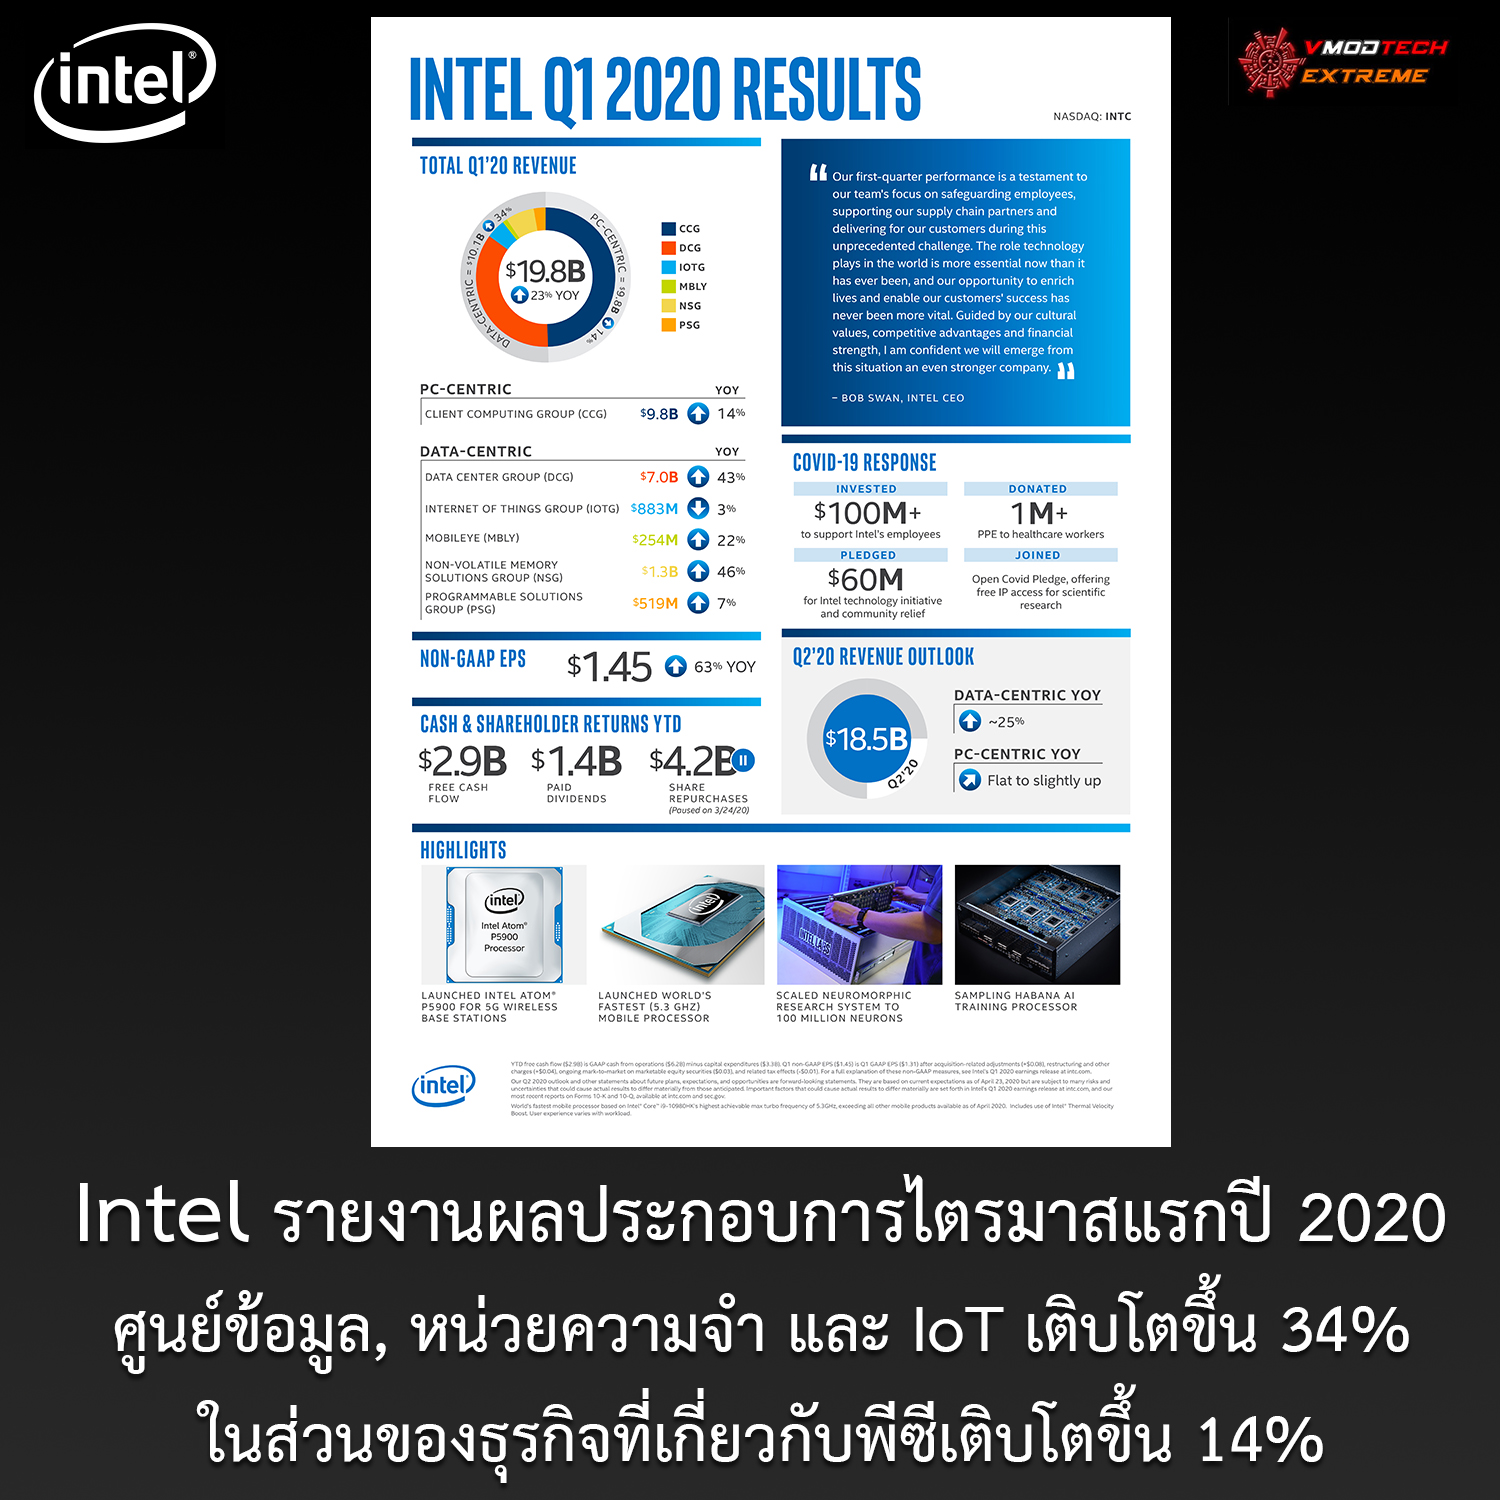 intel reports first quarter 2020 financial results Intel รายงานผลประกอบการศูนย์ข้อมูล, หน่วยความจำ และ IoT โดยรวมเติบโตขึ้น 34% ในส่วนของธุรกิจที่เกี่ยวกับพีซีเติบโตขึ้น 14% ในไตรมาสแรกปี 2020 